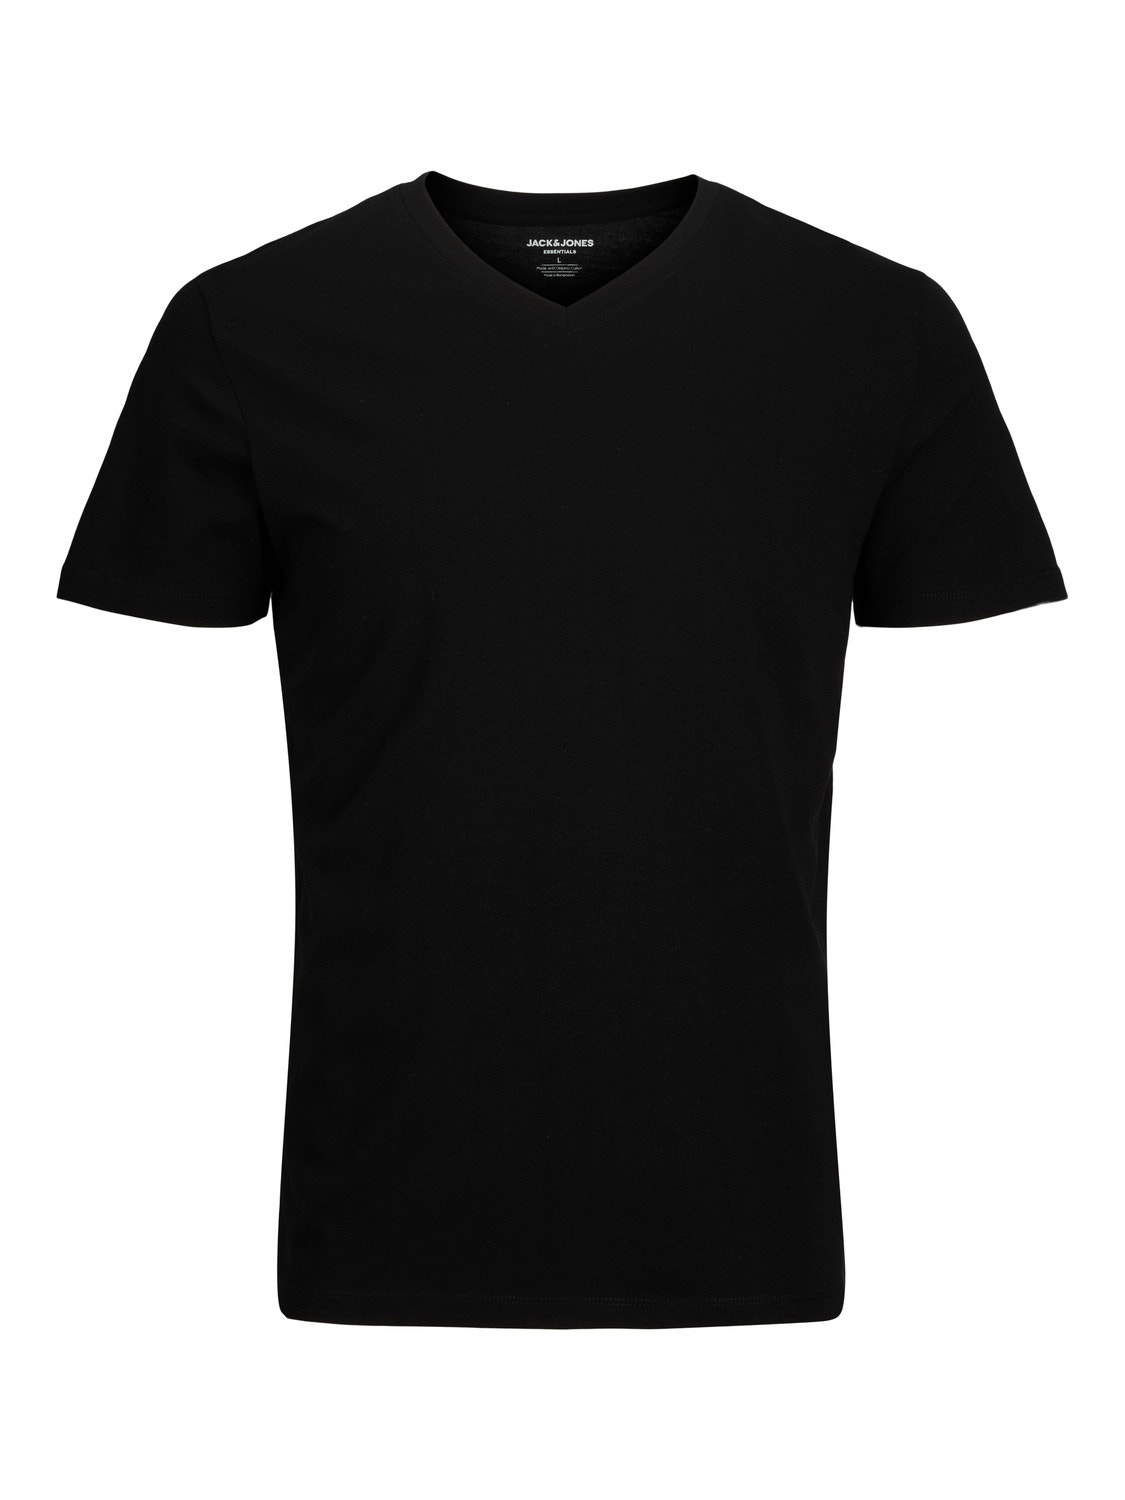 Jack & Jones Plain V-Neck T-shirt -Black - 12156102